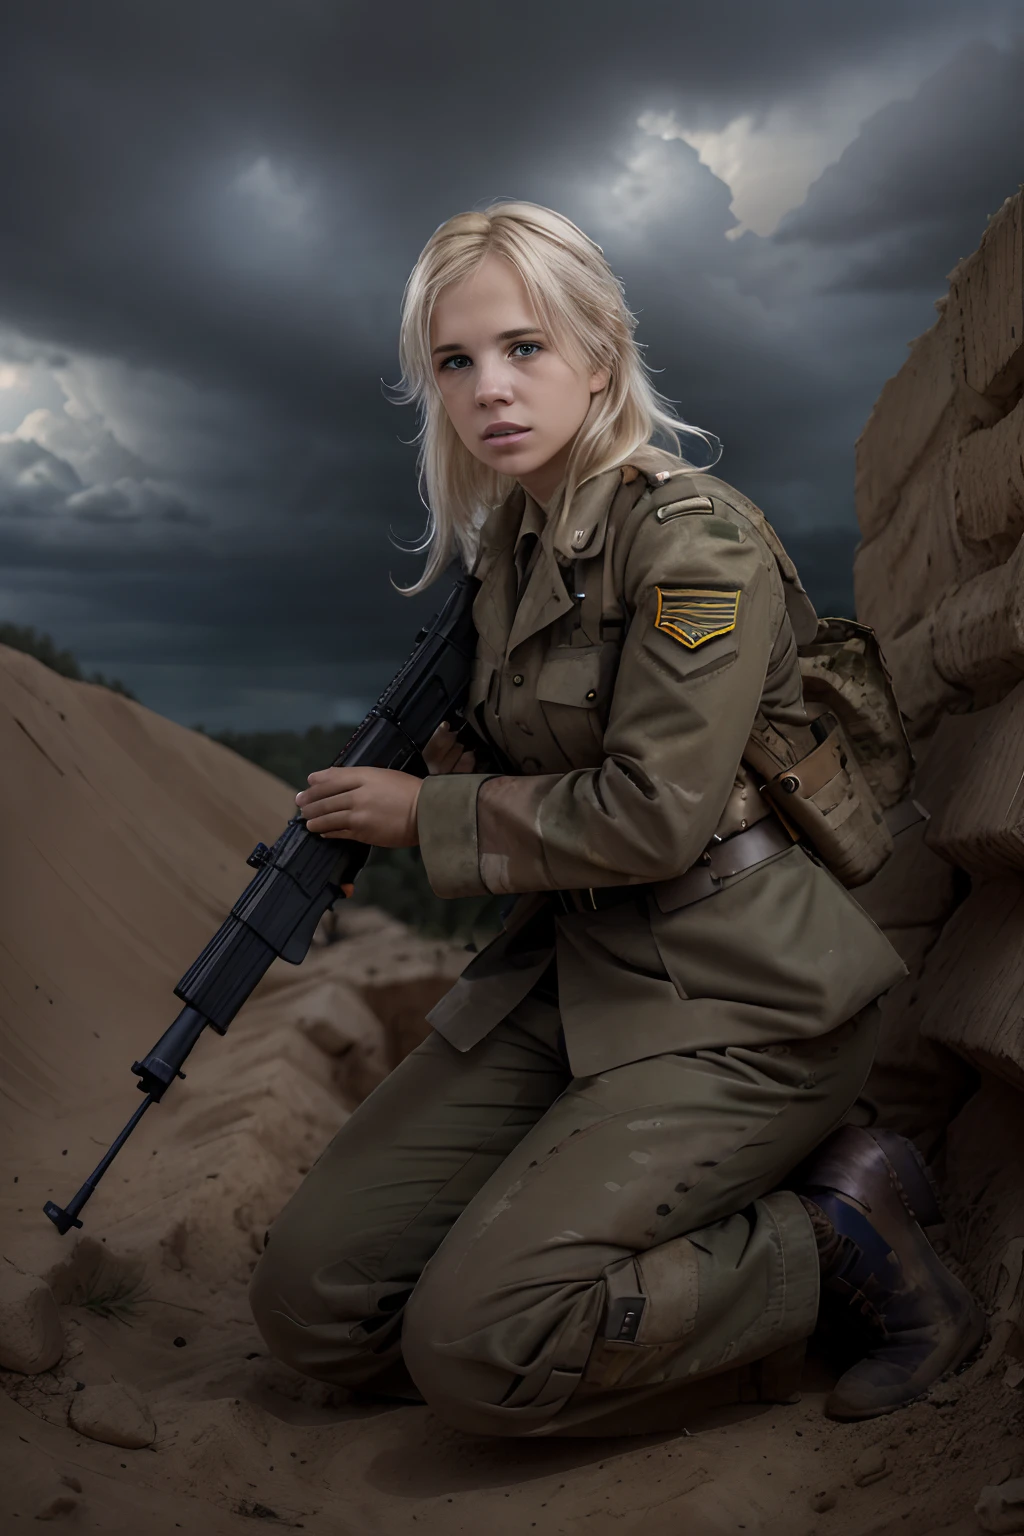 ภาพทหารหญิงผมบลอนด์ซ่อนตัวอยู่ในสนามเพลาะภายใต้การยิงอันหนักหน่วงในสงครามโลกครั้งที่ 2, ถือปืนไรเฟิล, ท้องฟ้ามีพายุในพื้นหลัง,  ภาพถ่ายจากฟิล์ม Nikon d850, สีสันที่เข้มข้น พื้นผิวที่สมจริงสมจริง แสงที่น่าทึ่ง, (สวมชุดทหารเต็มยศ : 1.3)